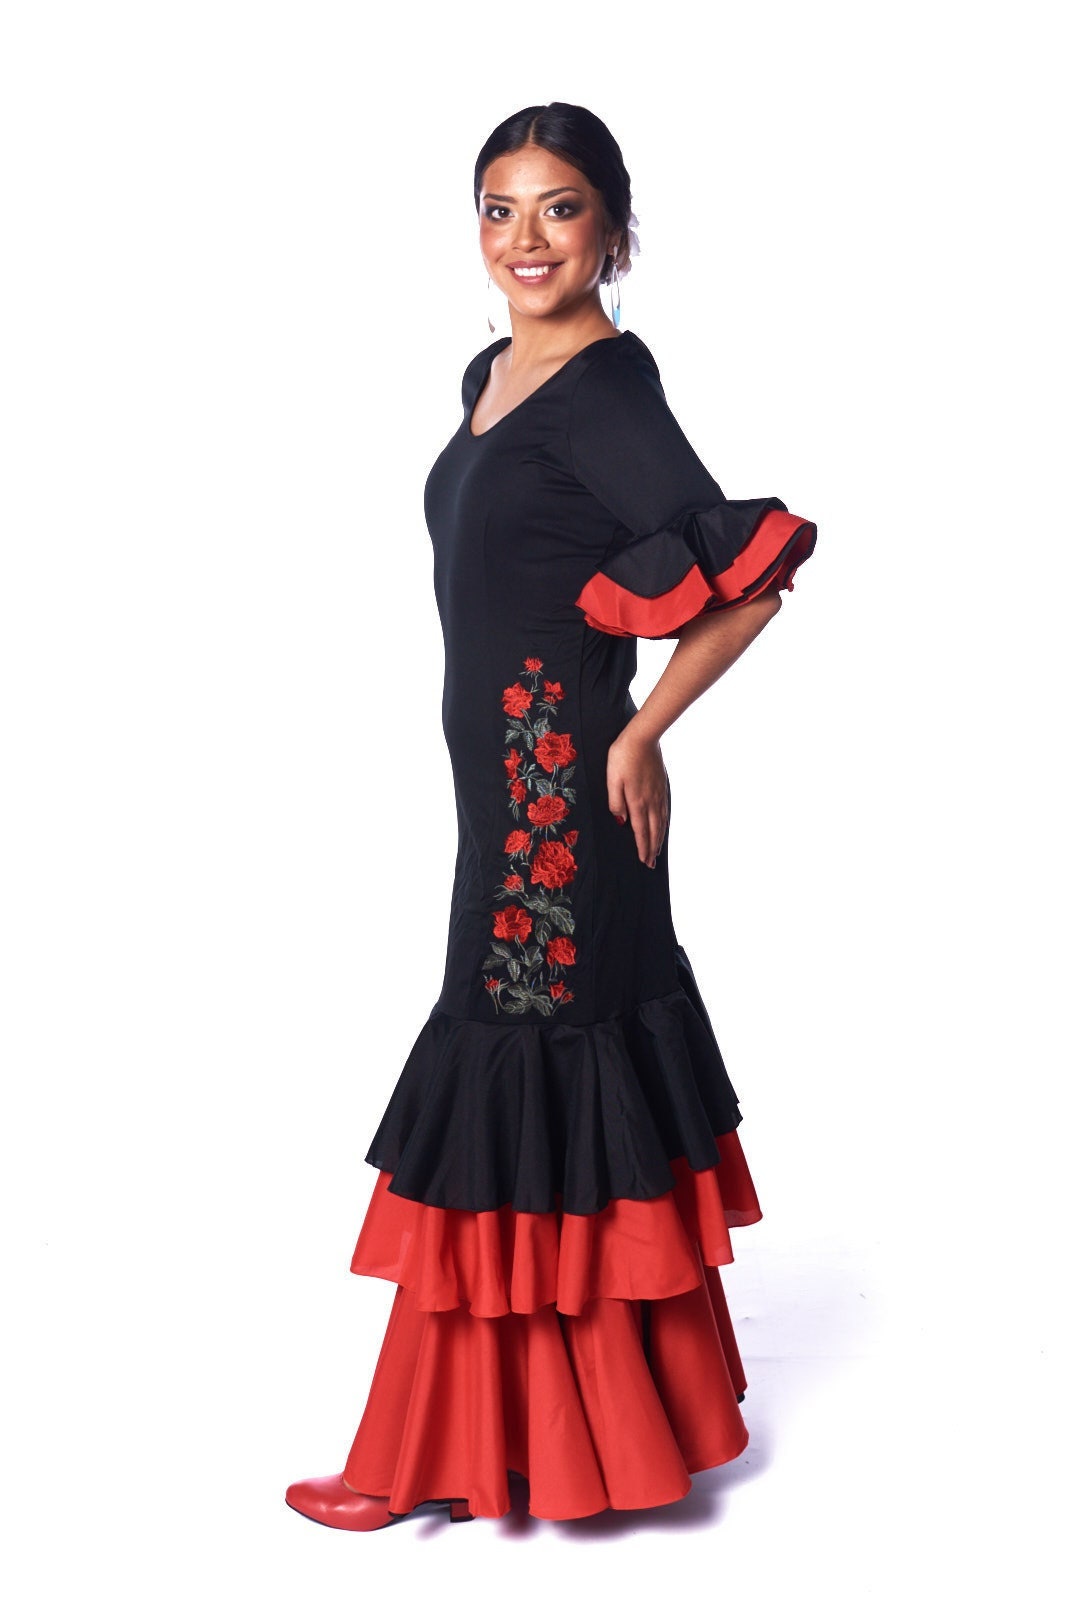 Vestido flamenco de mujer 2ª parte, Como hacer un vestido flamenco